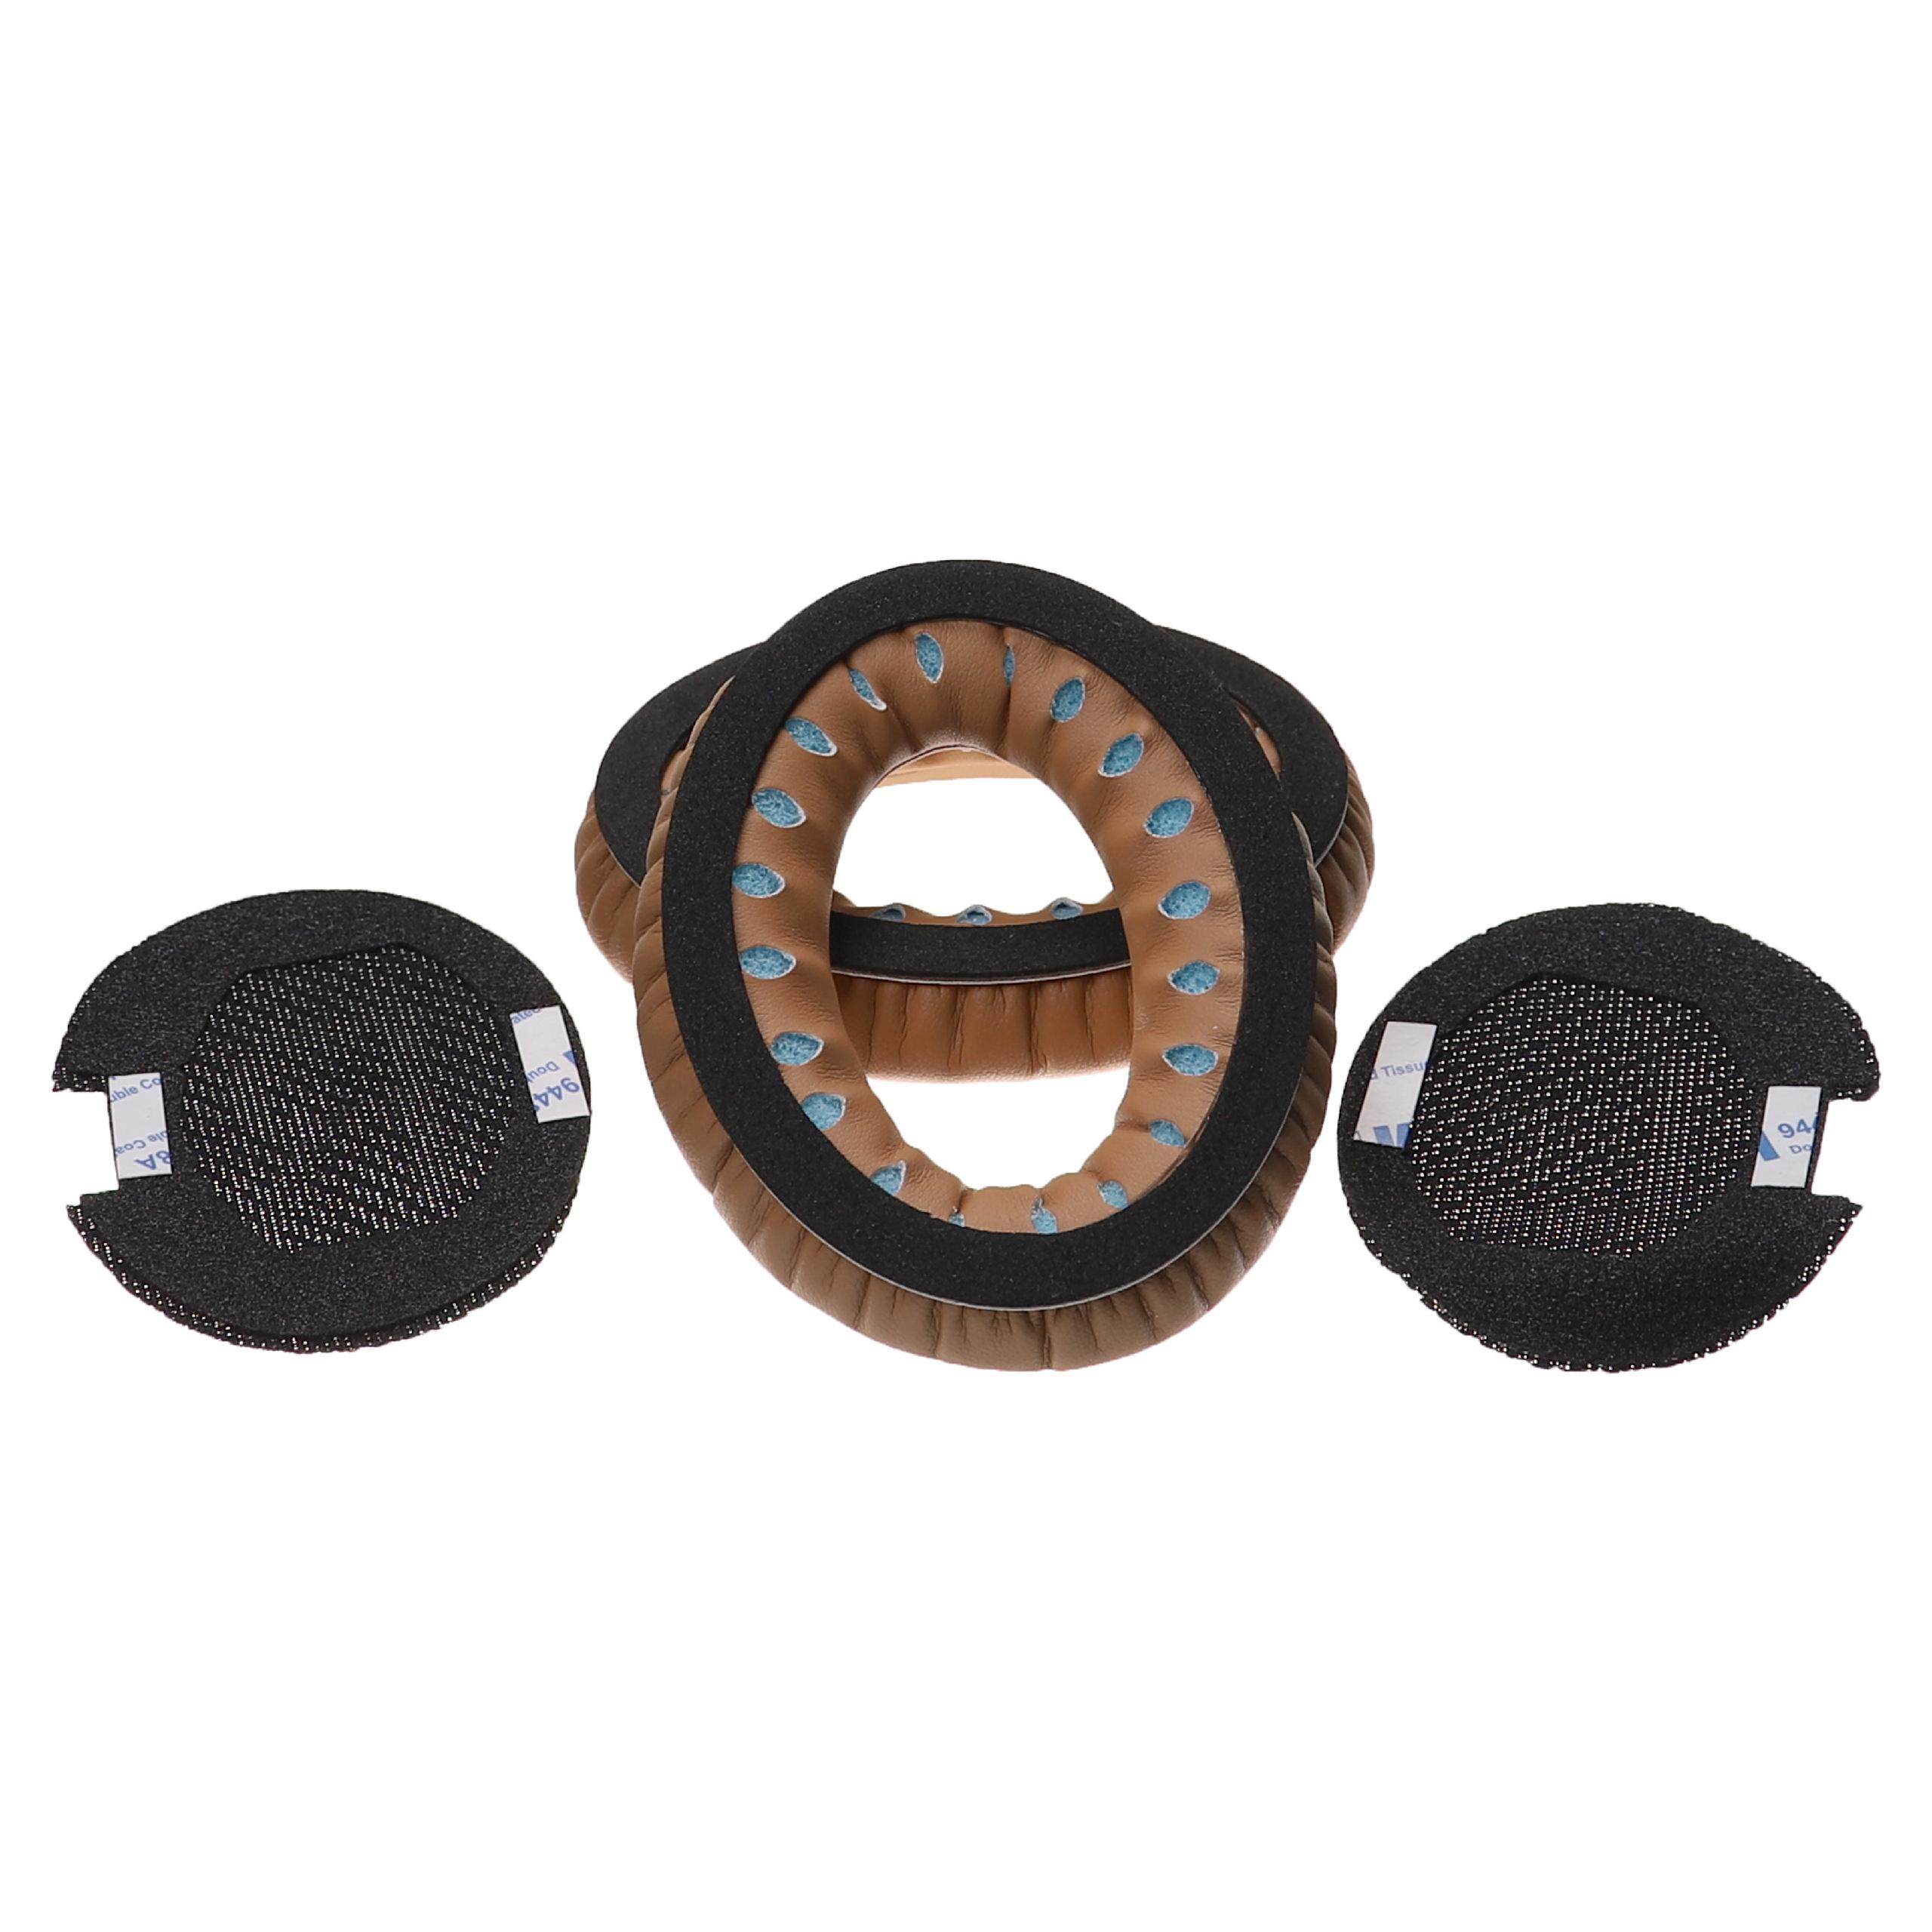 Coussinets d'oreille pour casque Bose AE2 - Avec mémoire de forme, matériau doux noir / marron